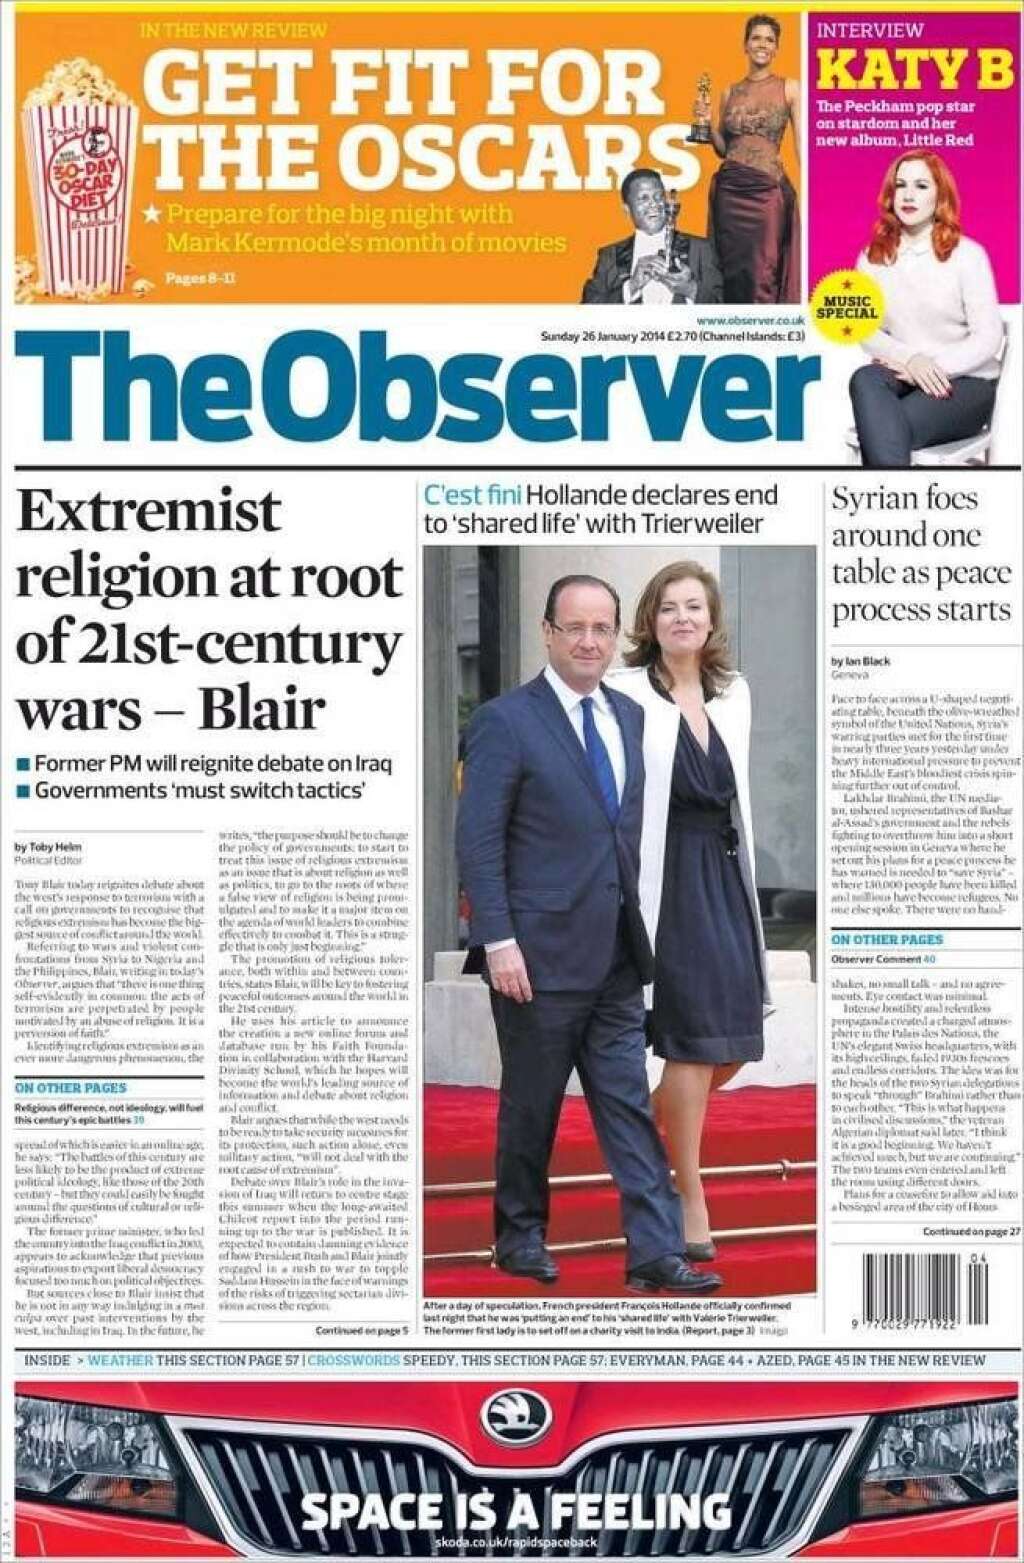 The Observer - "C'est fini", écrit en français le journal britannique The Observer qui ajoute: "Hollande annonce la fin de sa vie commune avec Trierweiler"